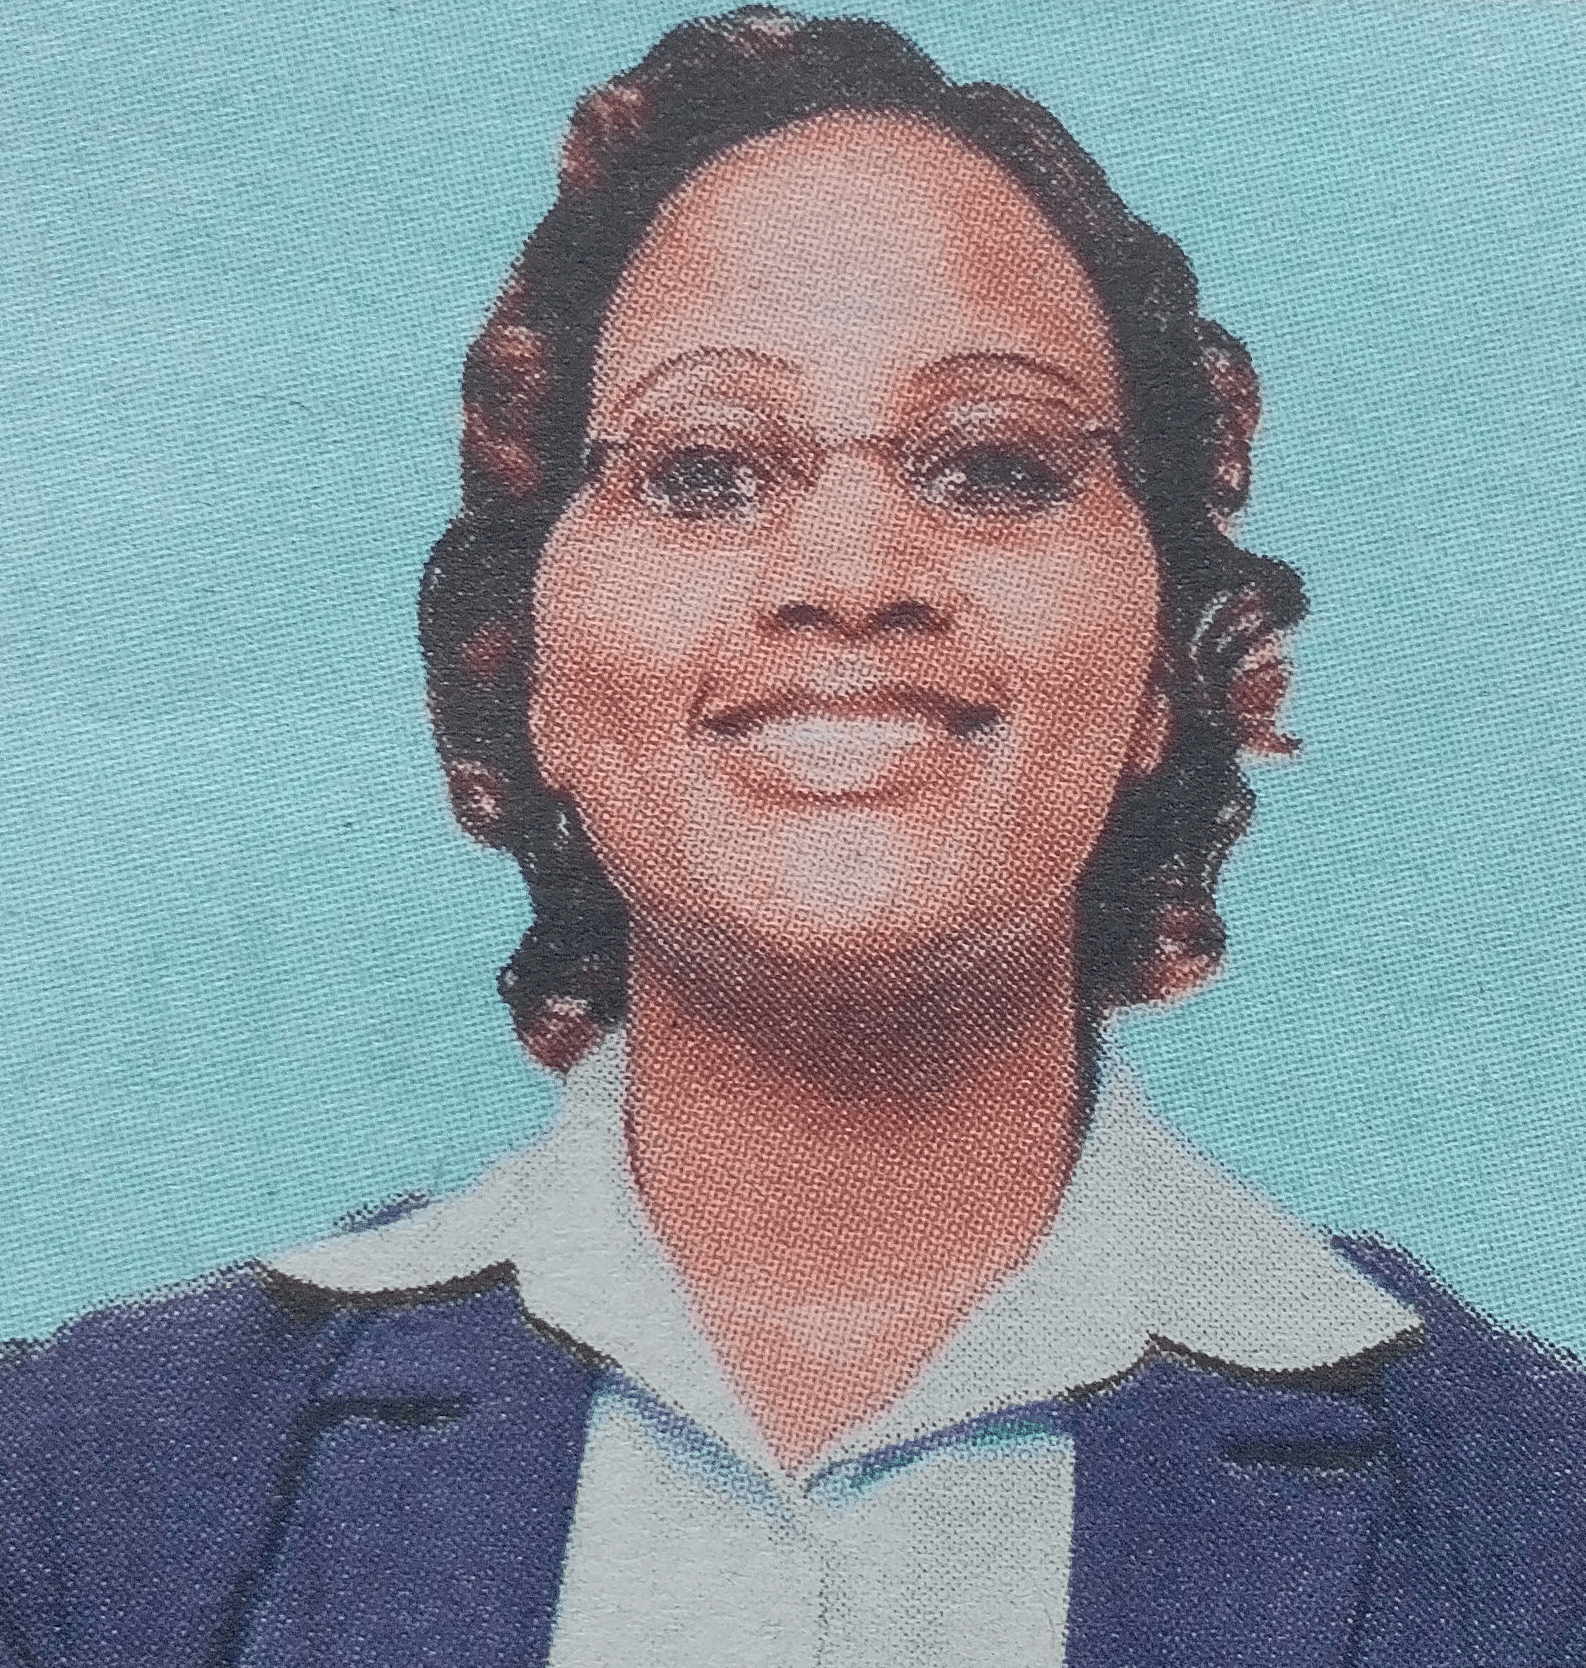 Obituary Image of Jane Wamucii Kimathi (Retired PCEA Elder)